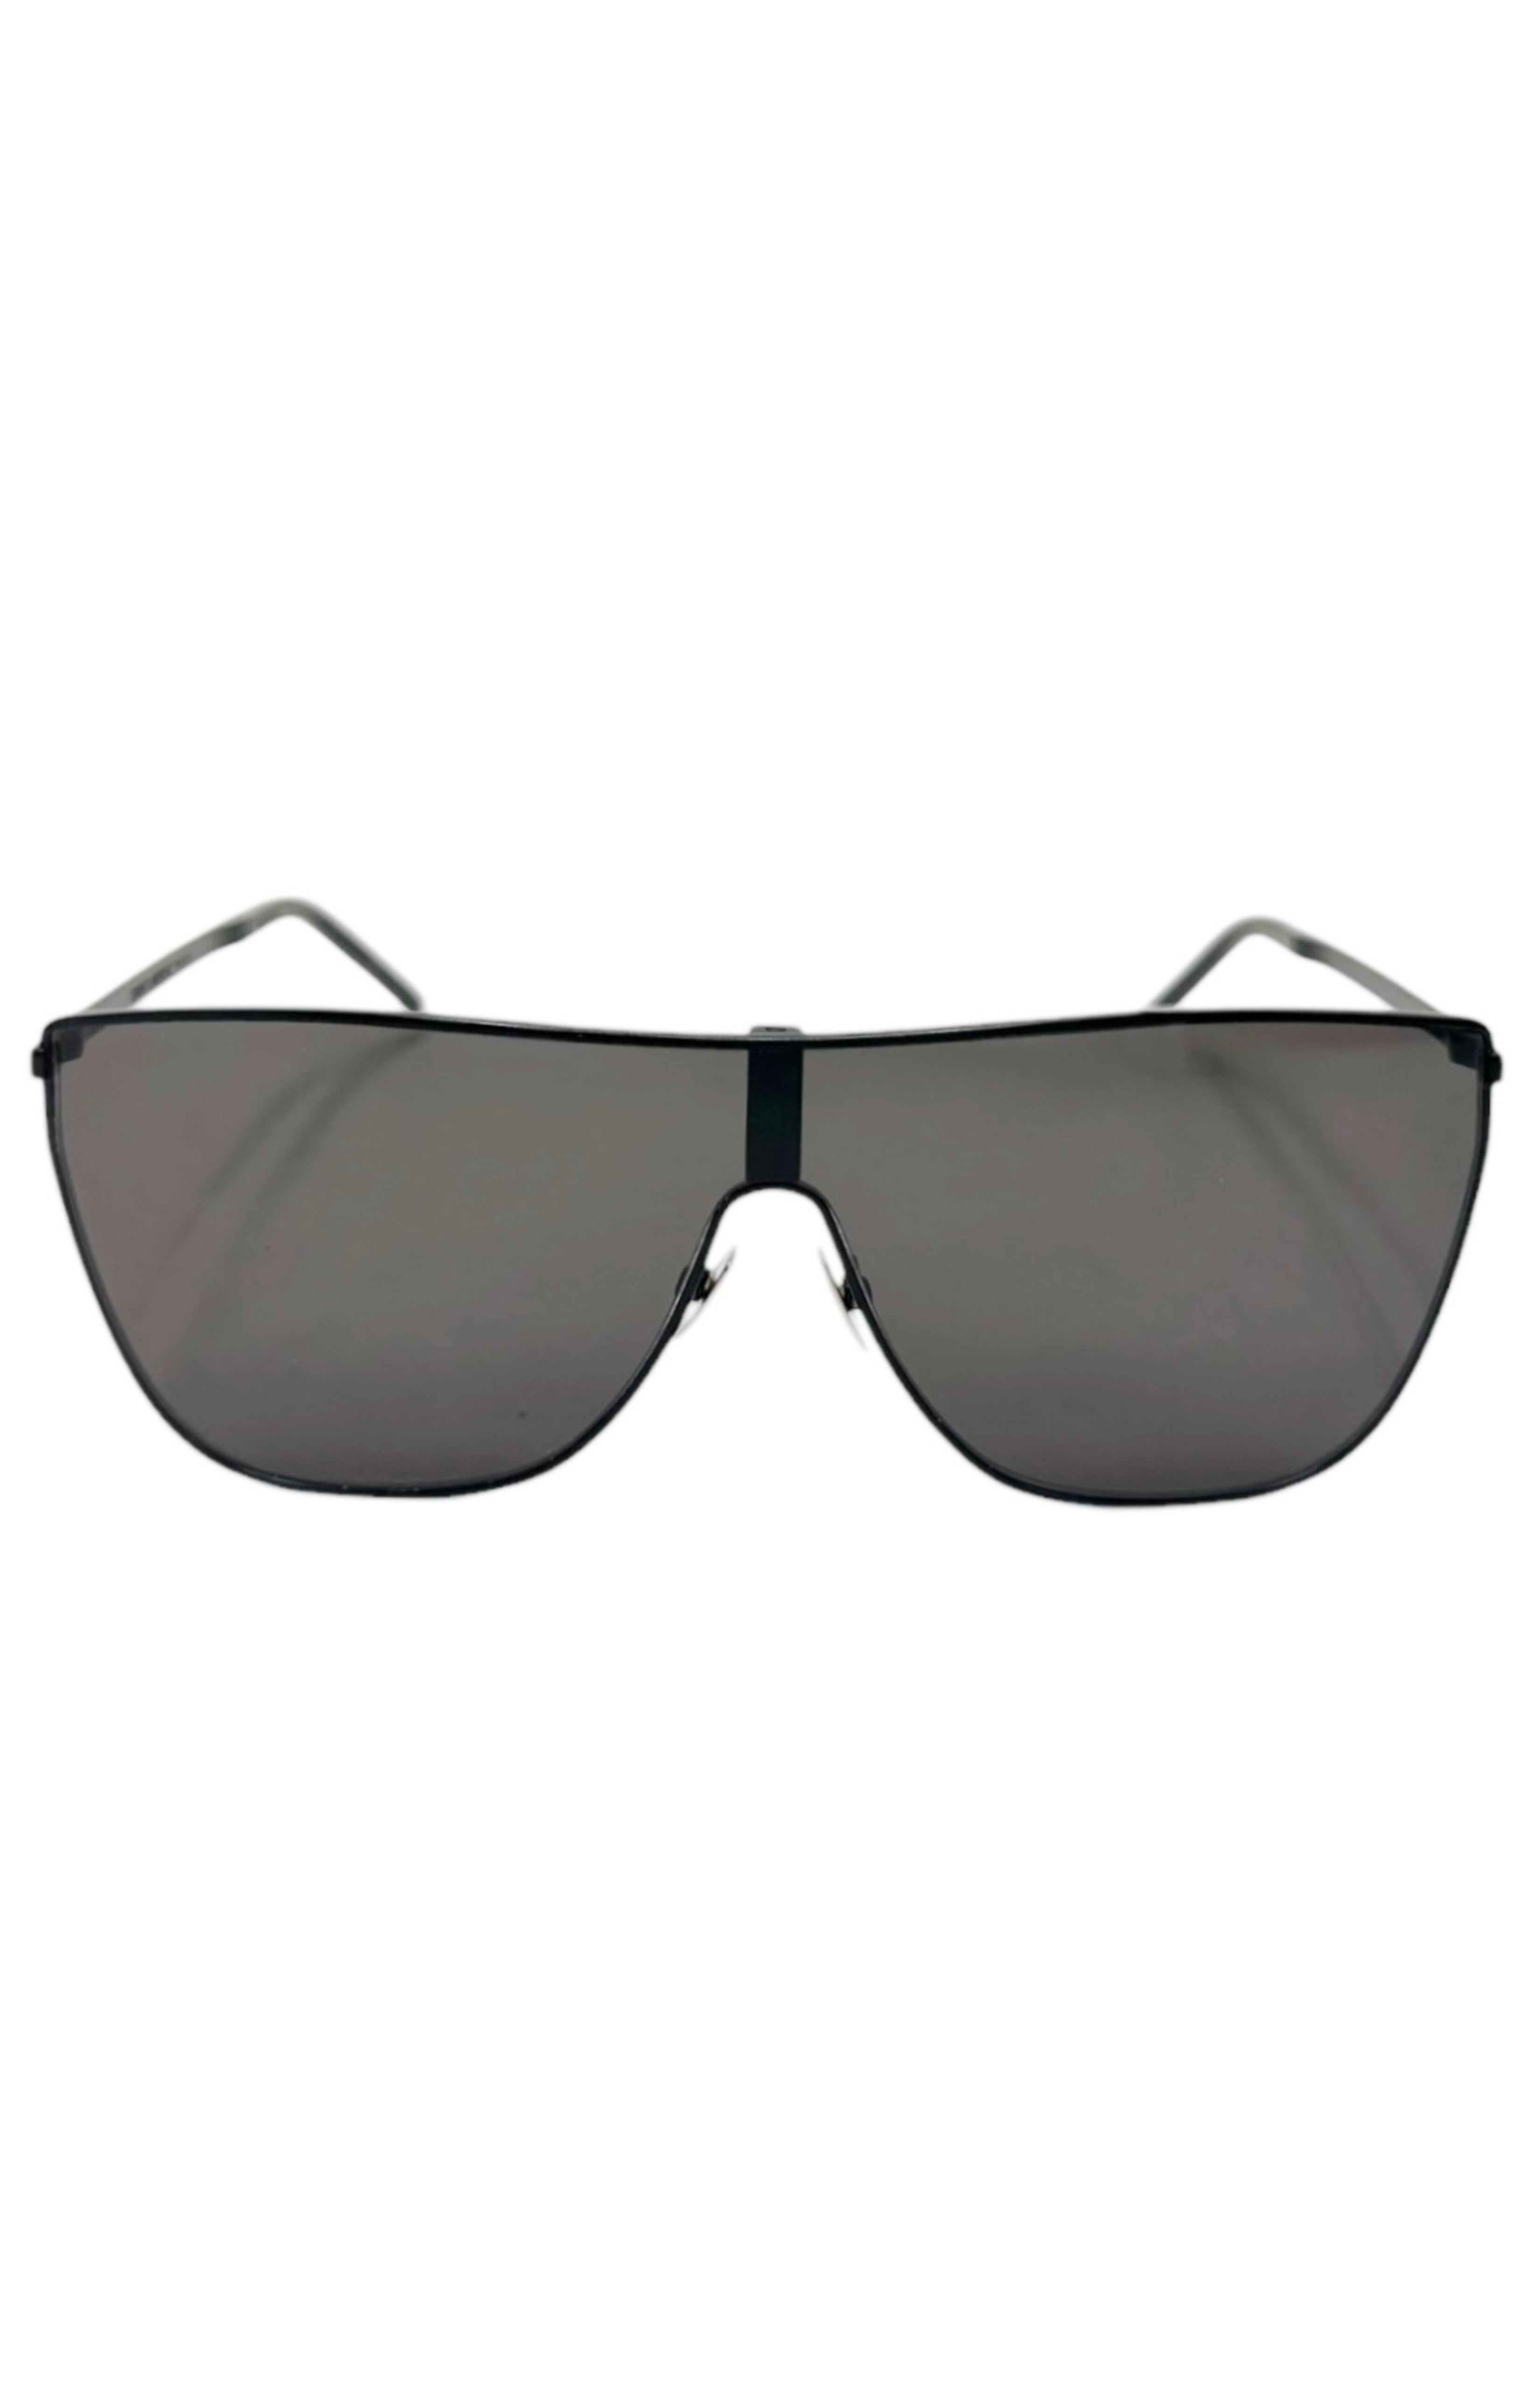 SAINT LAURENT Sunglasses Size: 5.75" x 2.125"